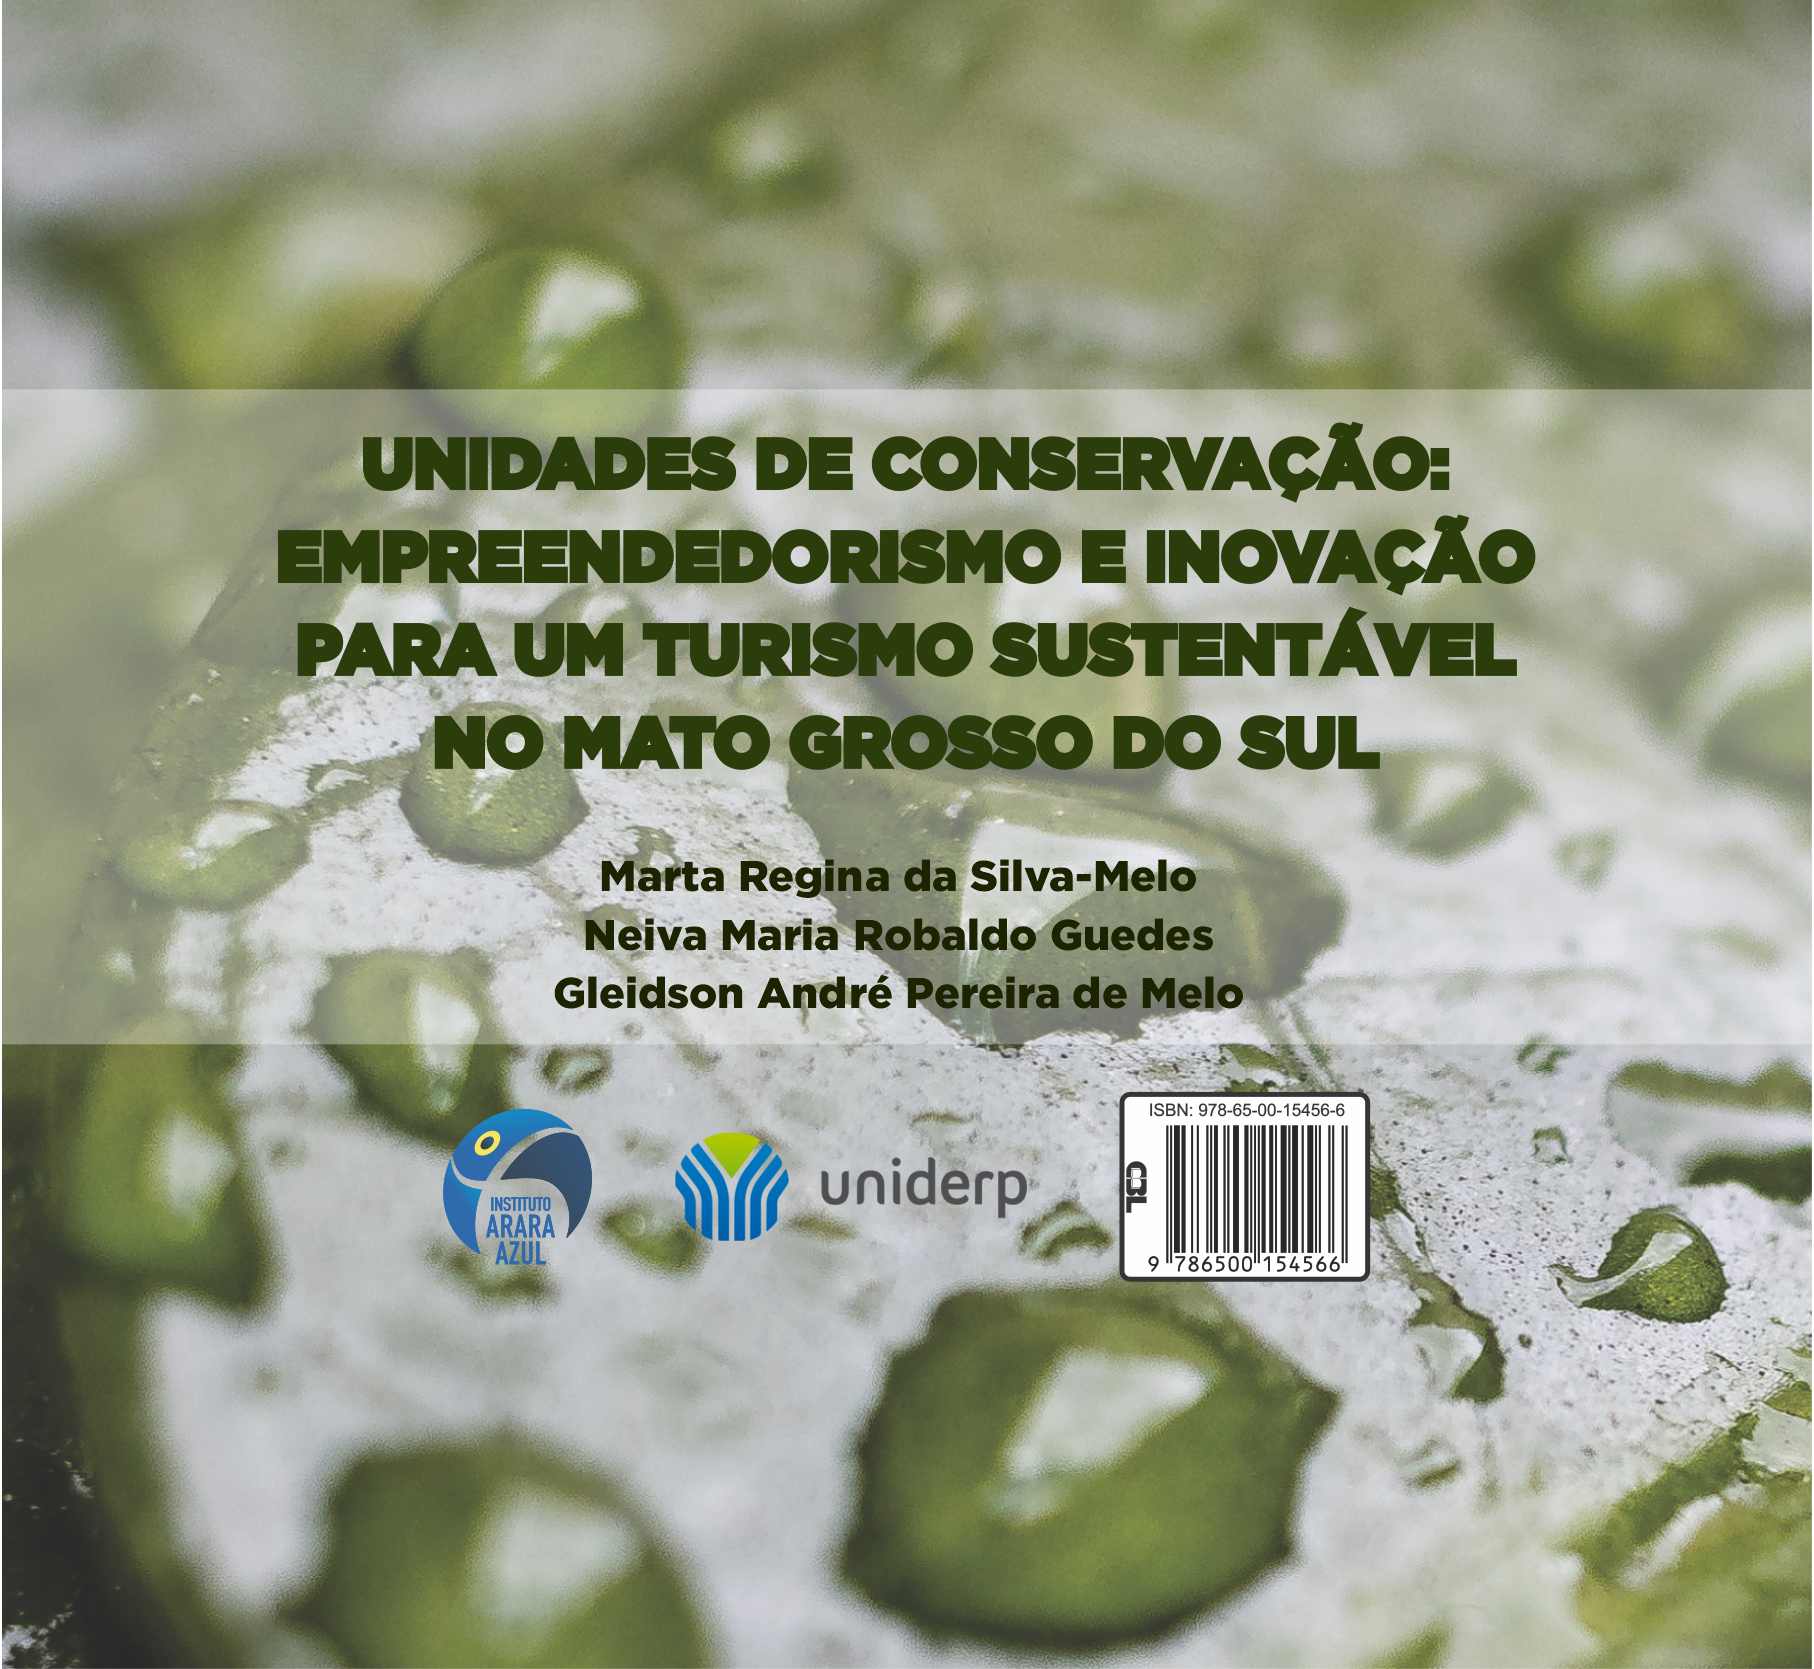 Unidades de Conservação: empreendedorismo e inovação para um turismo sustentável no Mato Grosso do Sul (download)